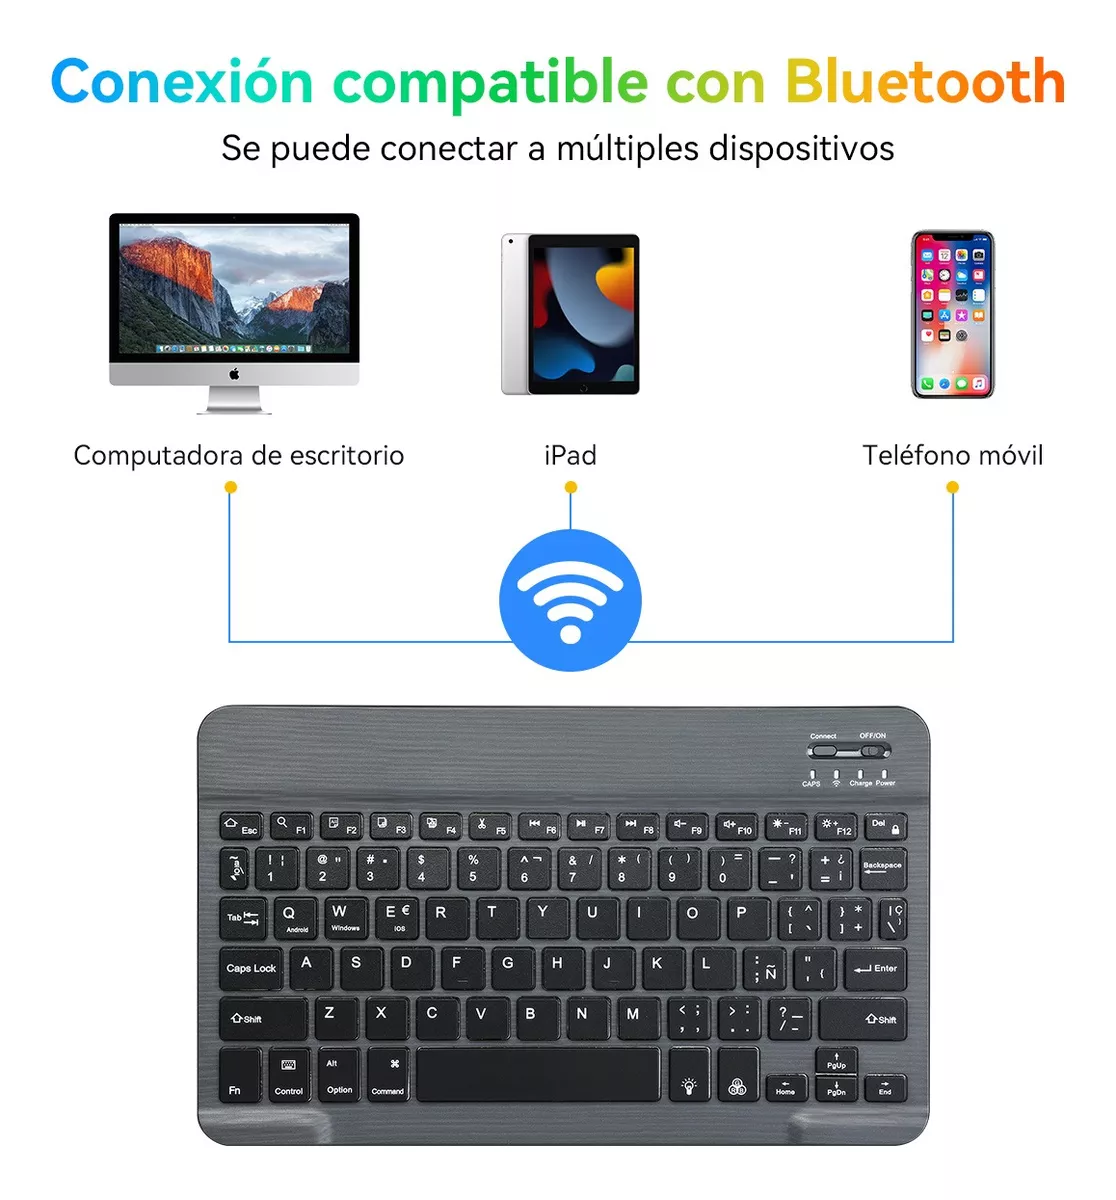 Combo de teclado y mouse Bluetooth, teclado inalámbrico portátil recargable  para Apple iPad, iPhone, iOS 13 y superior, Samsung, tableta, teléfono